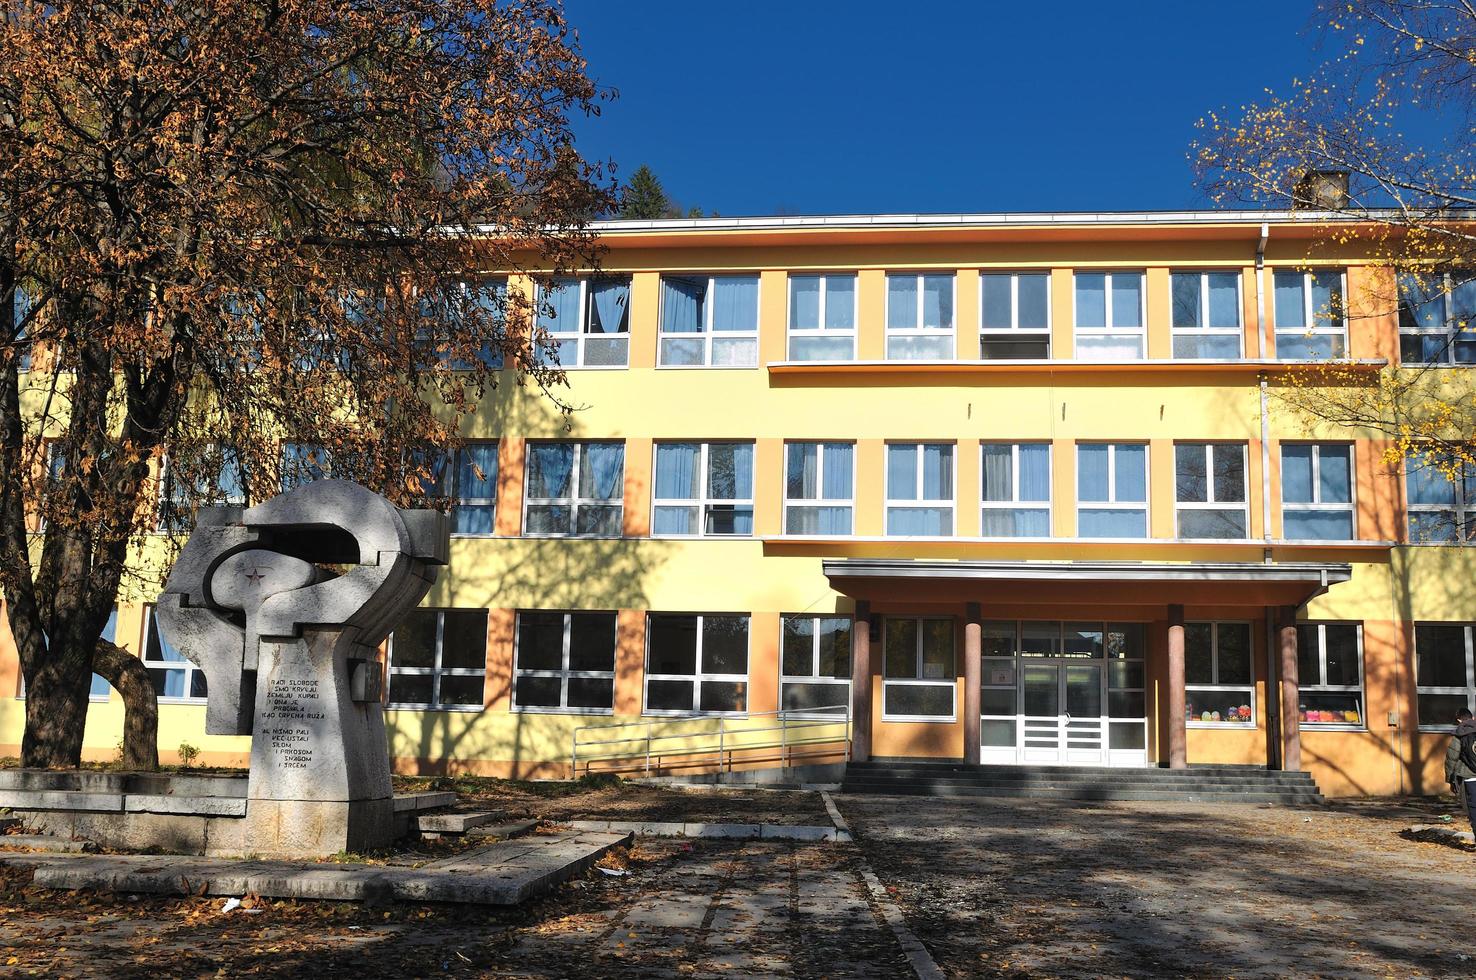 Suécia, 2022 - vista externa da escola foto